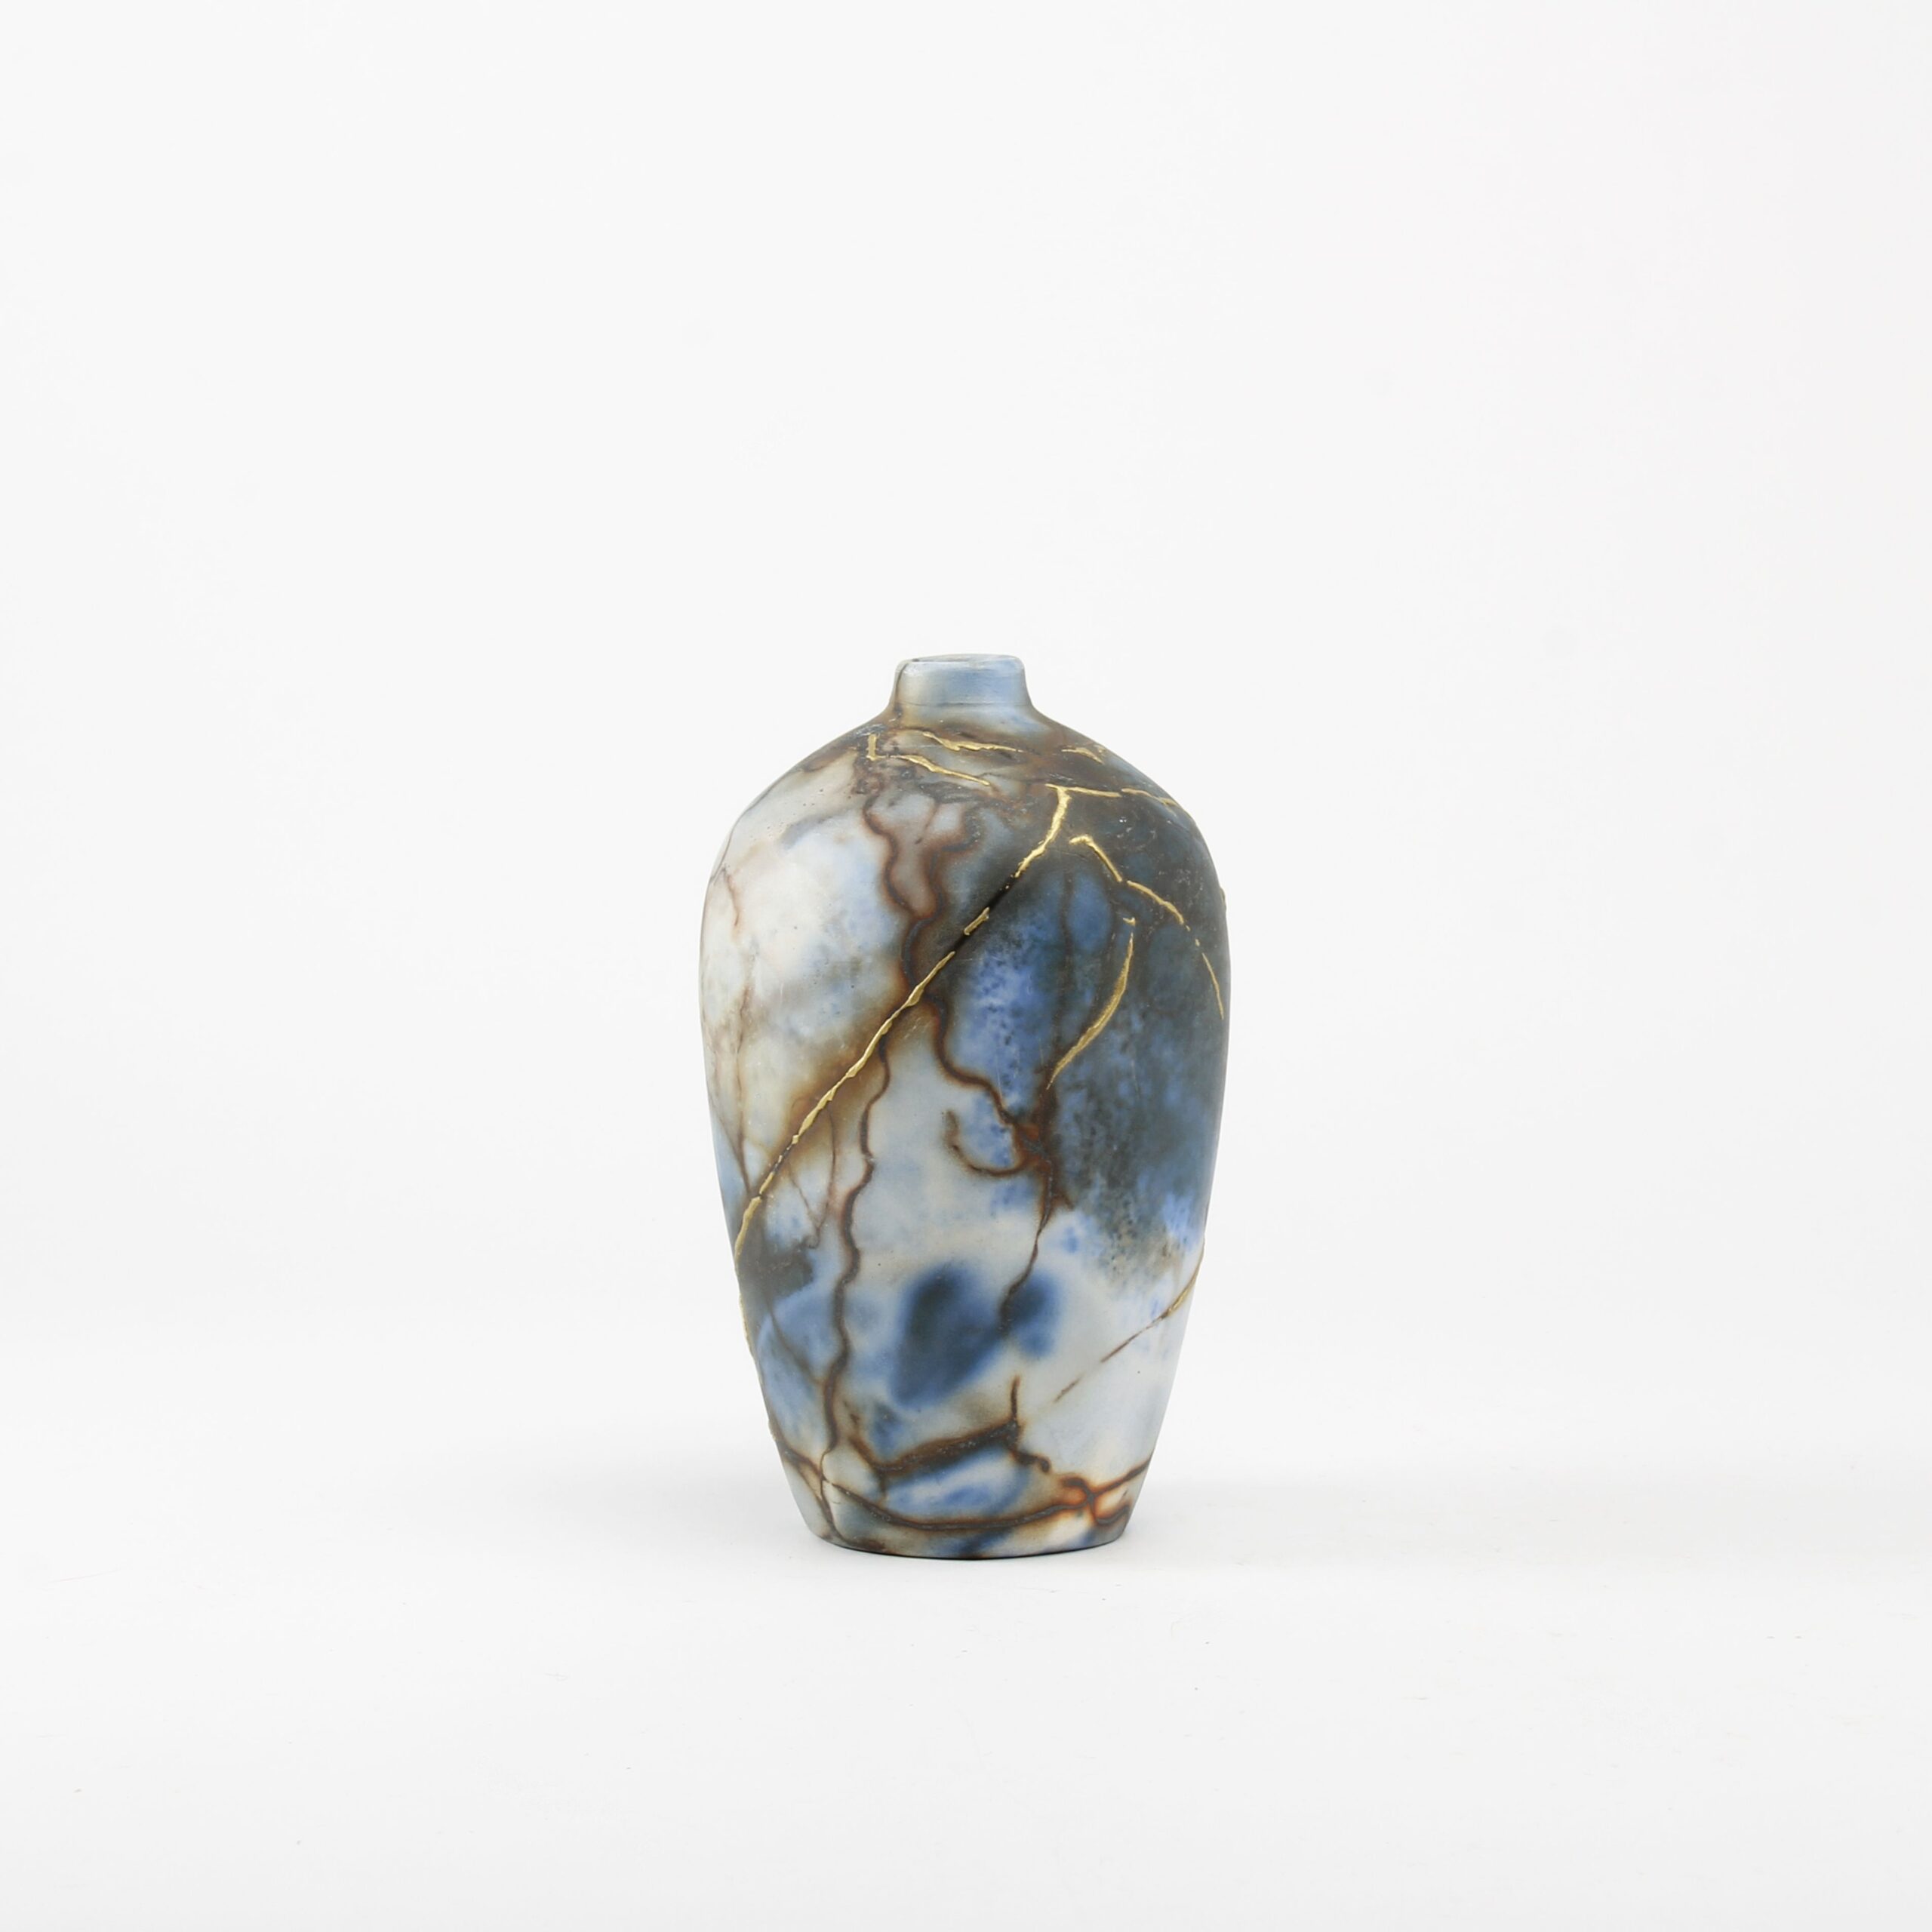 Alison Brannen: Medium Classic Urn Product Image 1 of 5